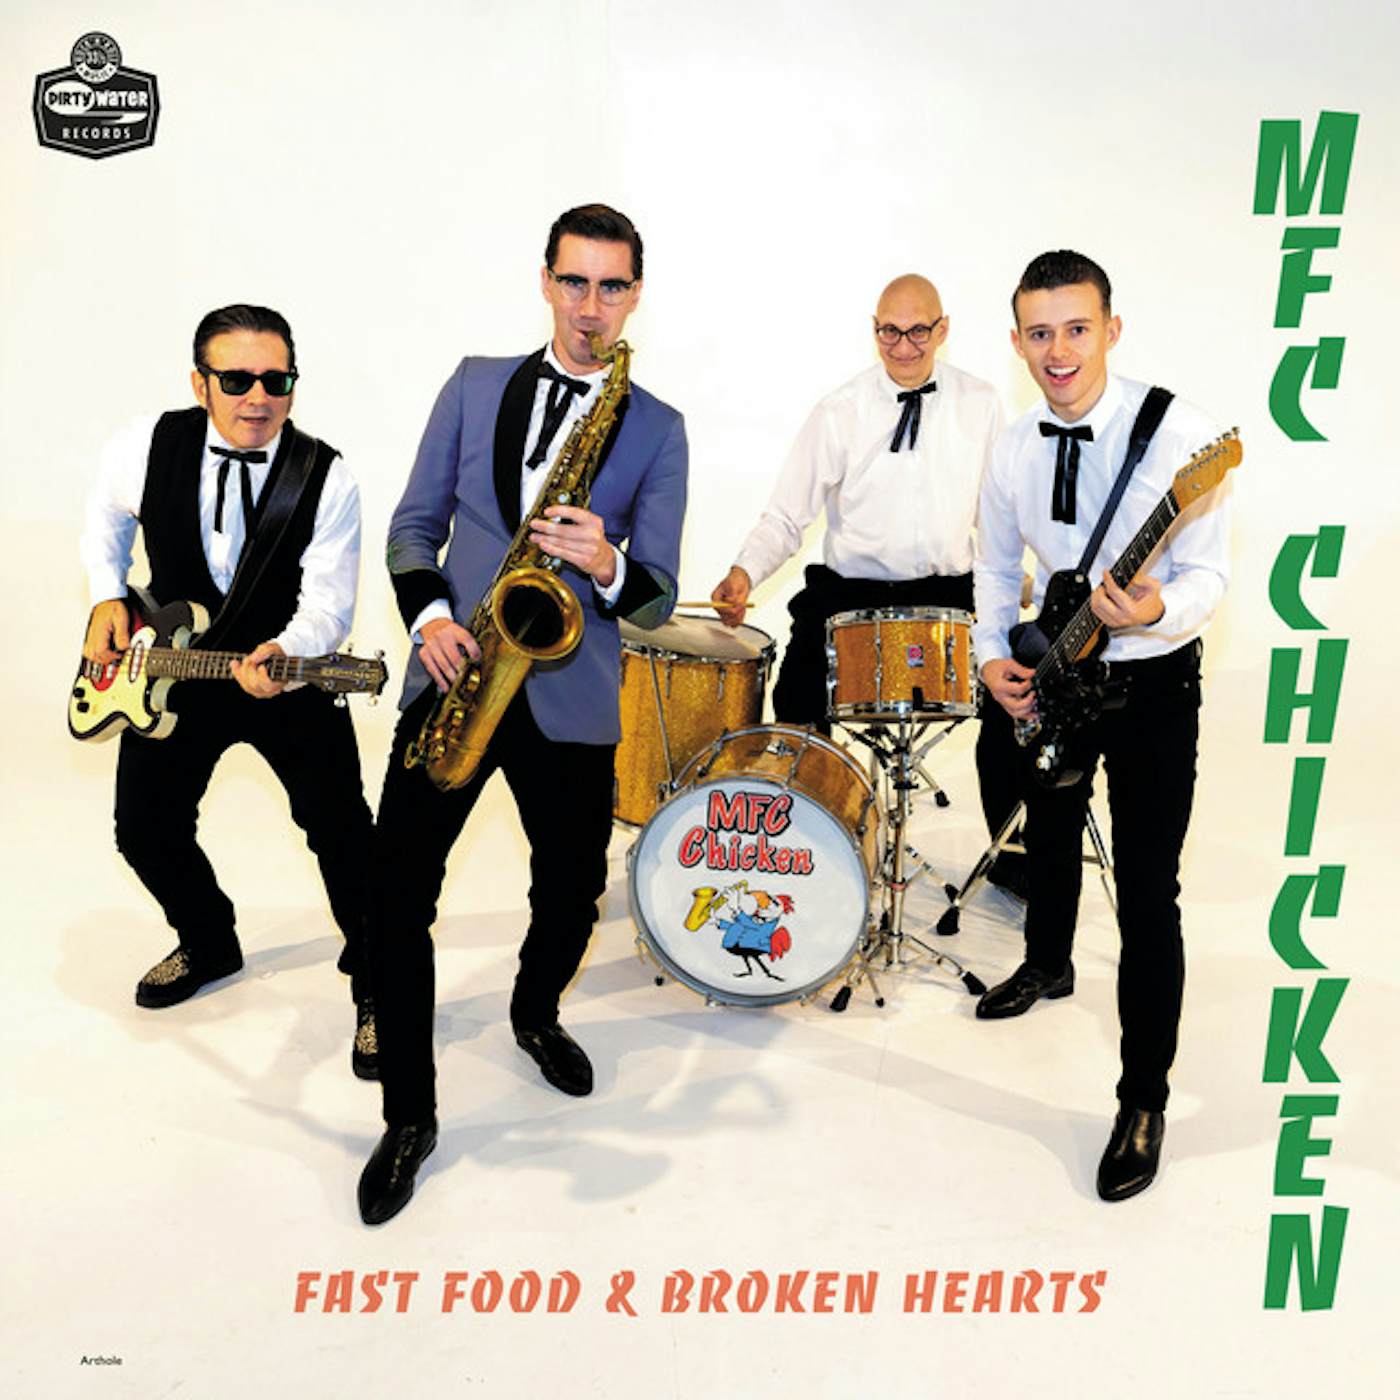 MFC Chicken FAST FOOD & BROKEN HEARTS CD